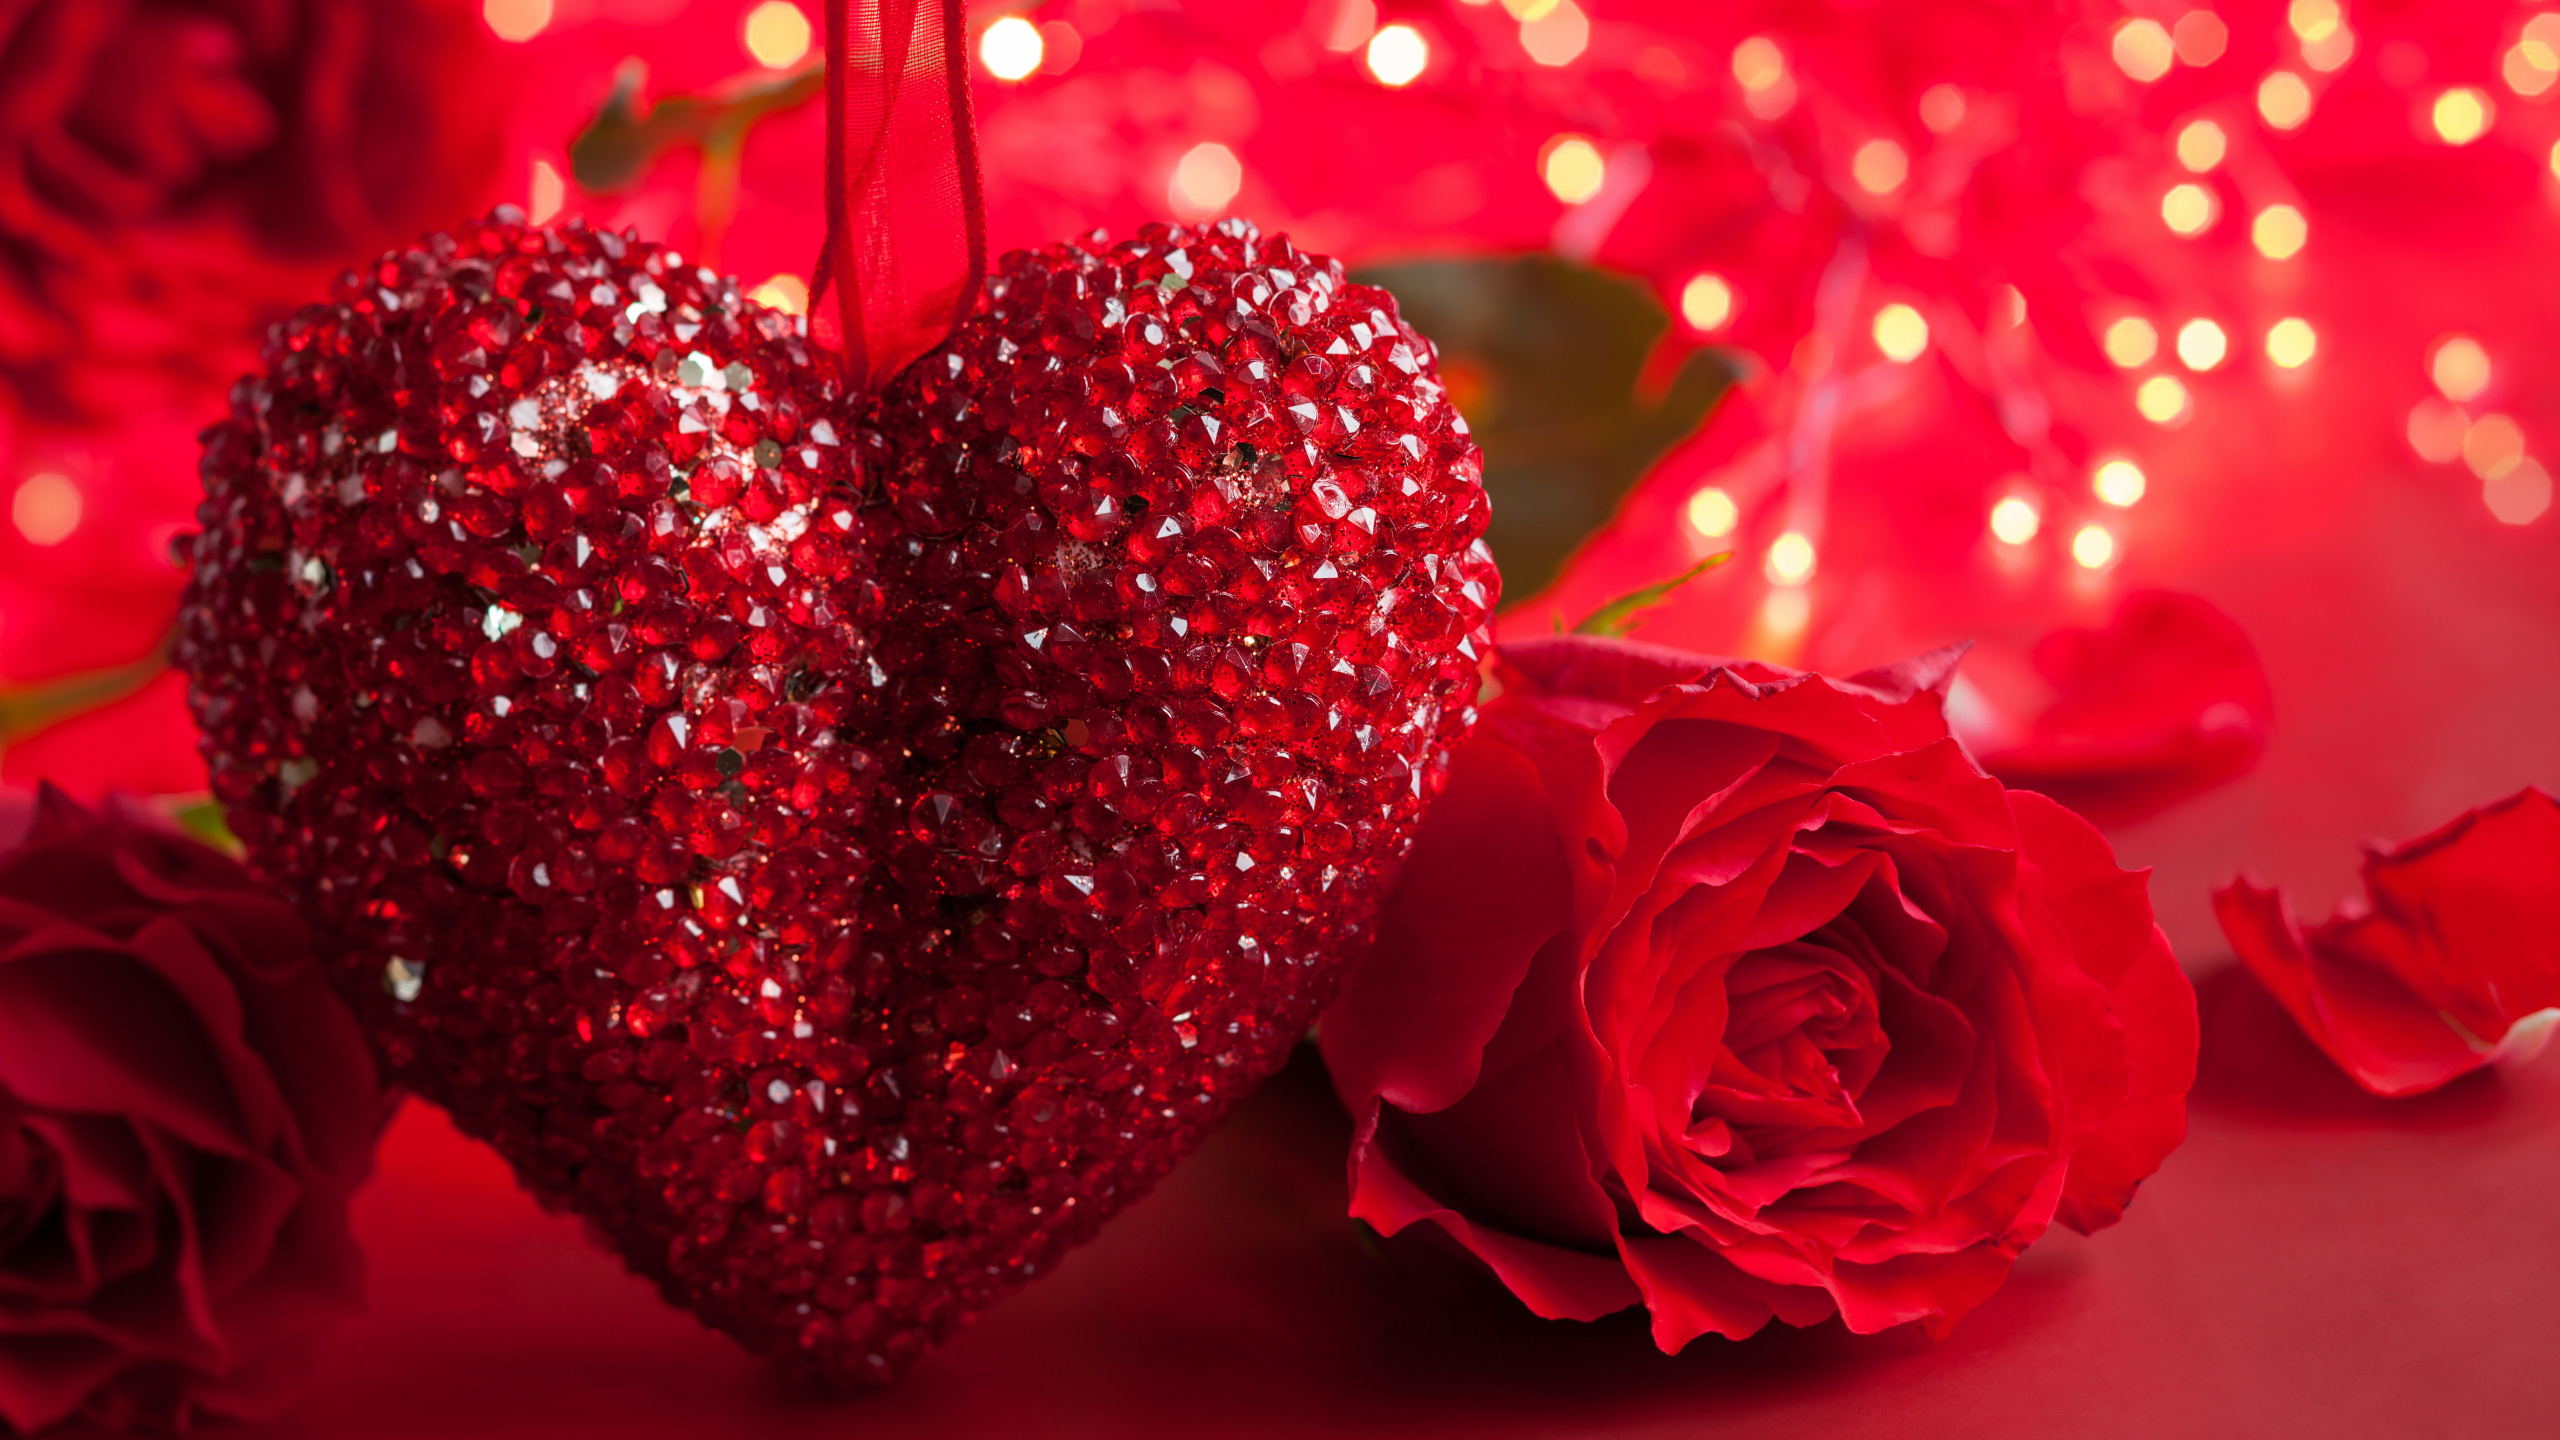 浪漫, 心脏, 红色的, 爱情, 友谊 壁纸 2560x1440 允许